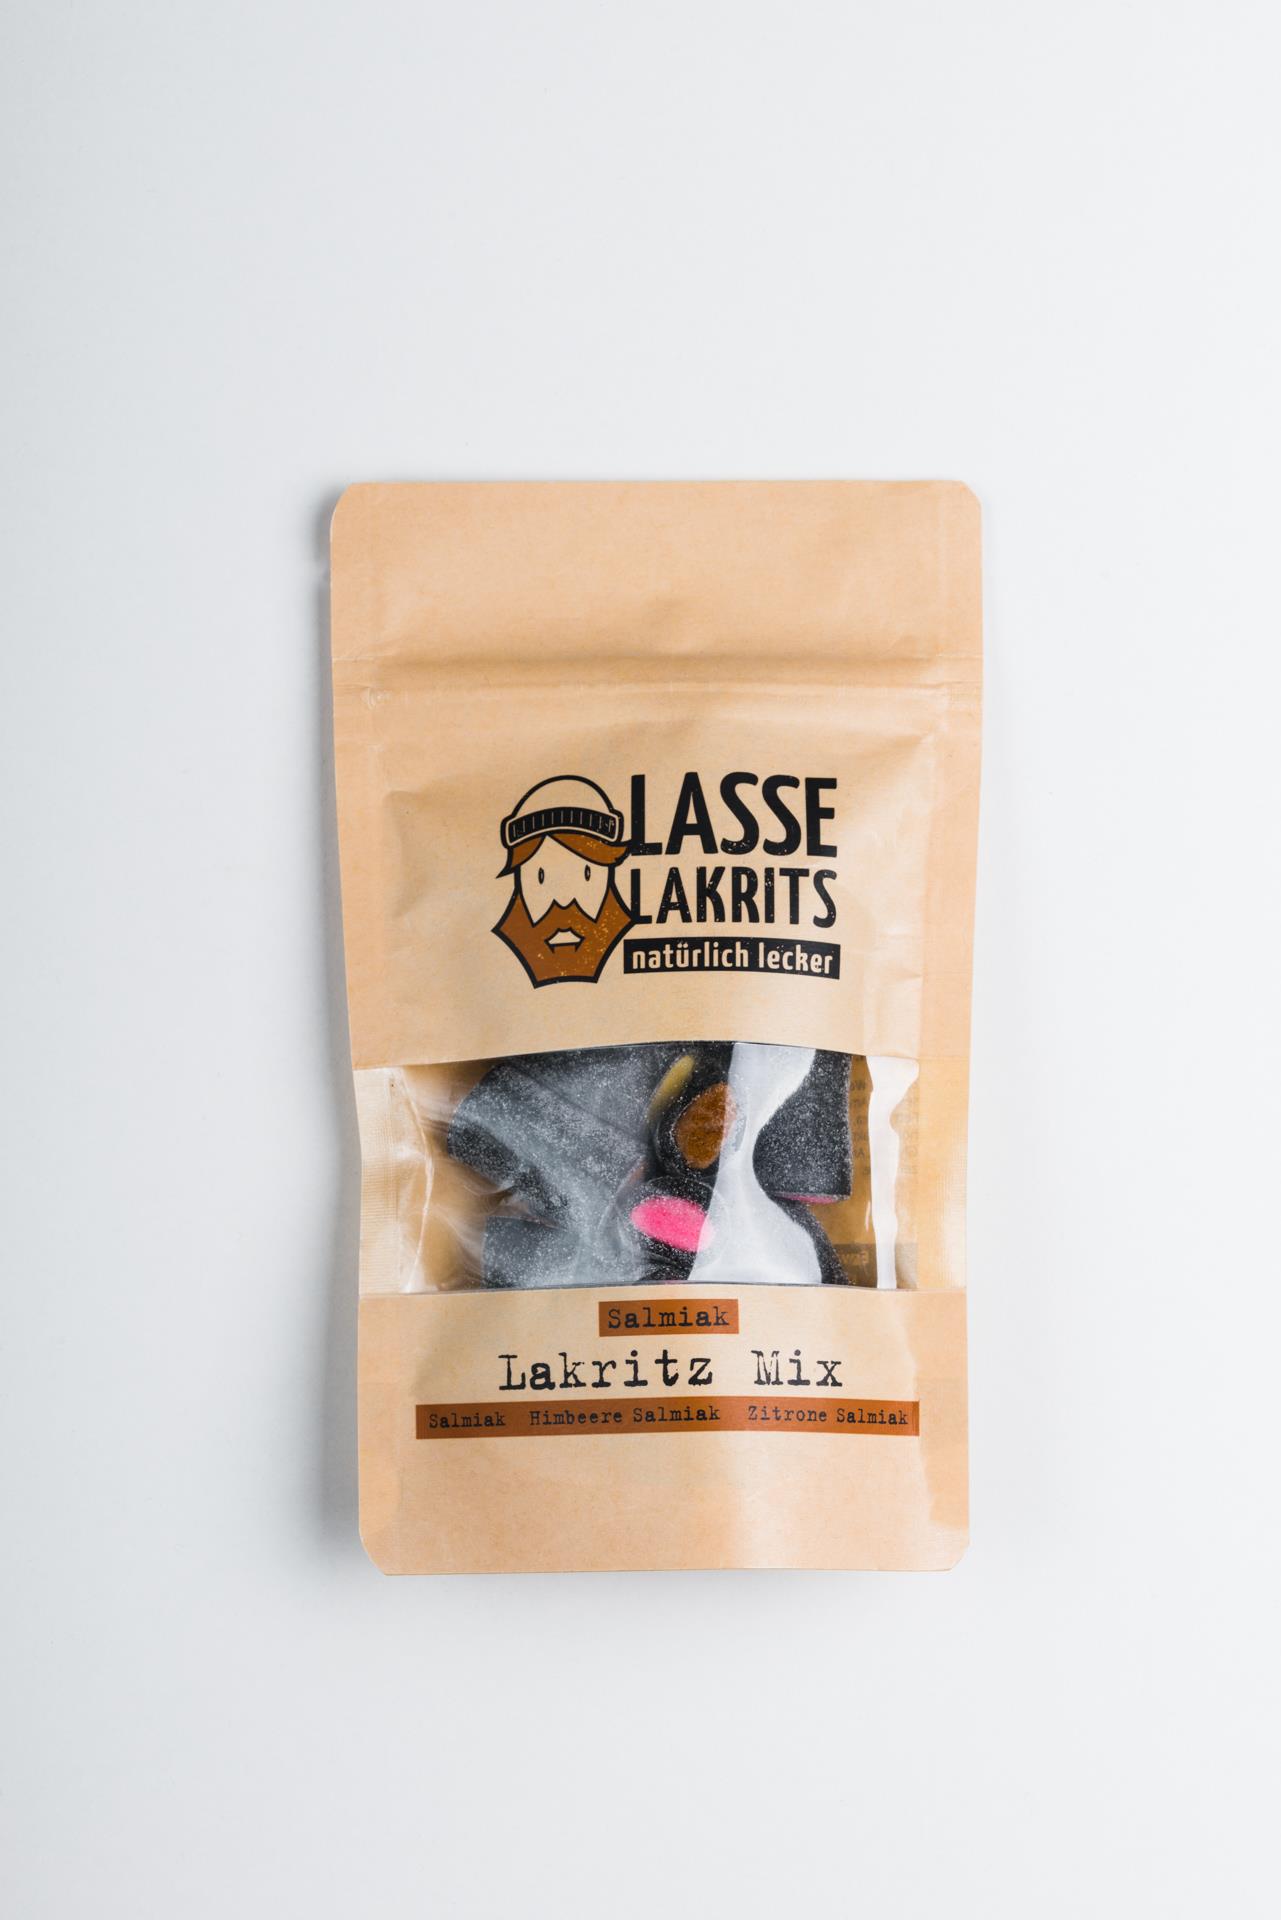 Lakritz Mix - Lasse Lakrits Produktbild 1